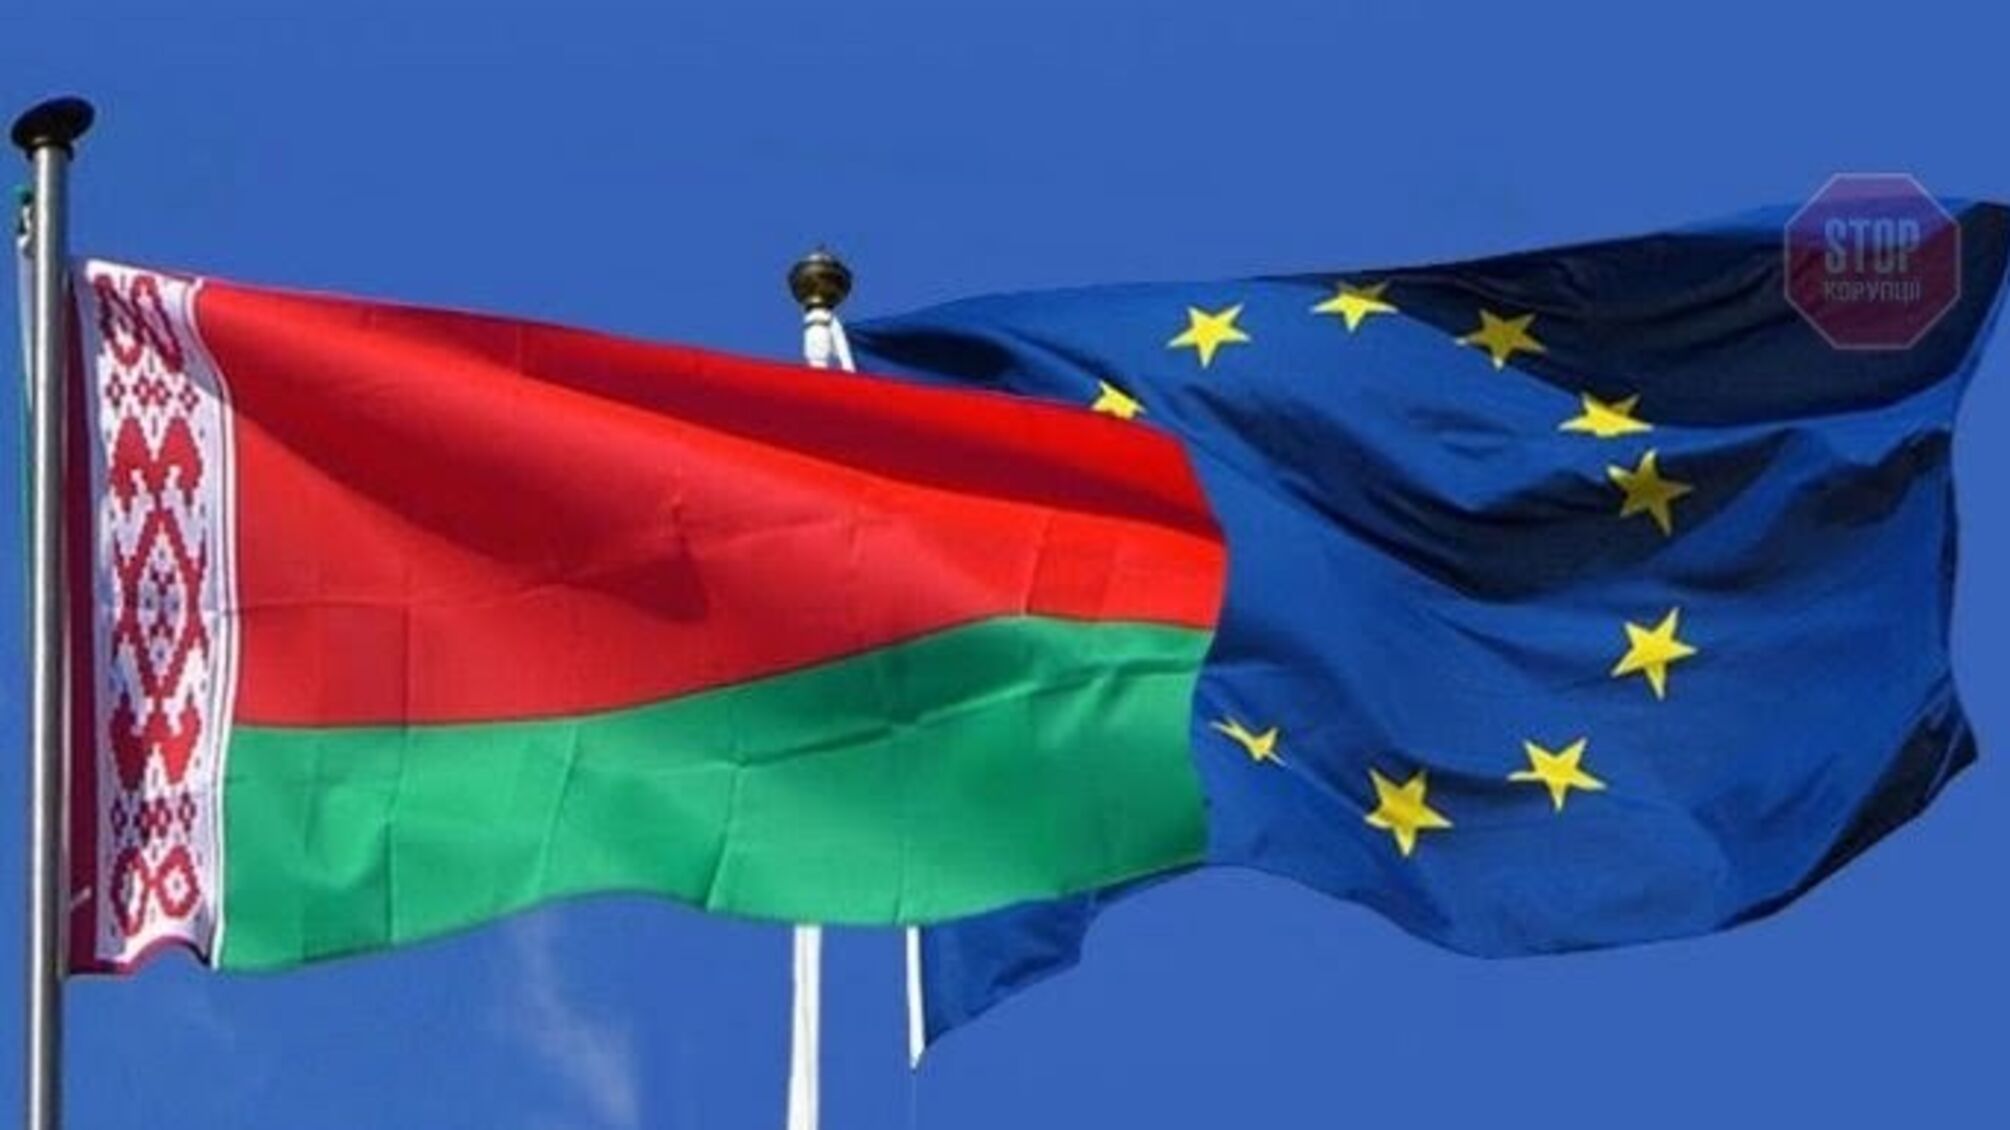 ЄС обіцяє виділити 3 млрд євро на “нову демократичну Білорусь”